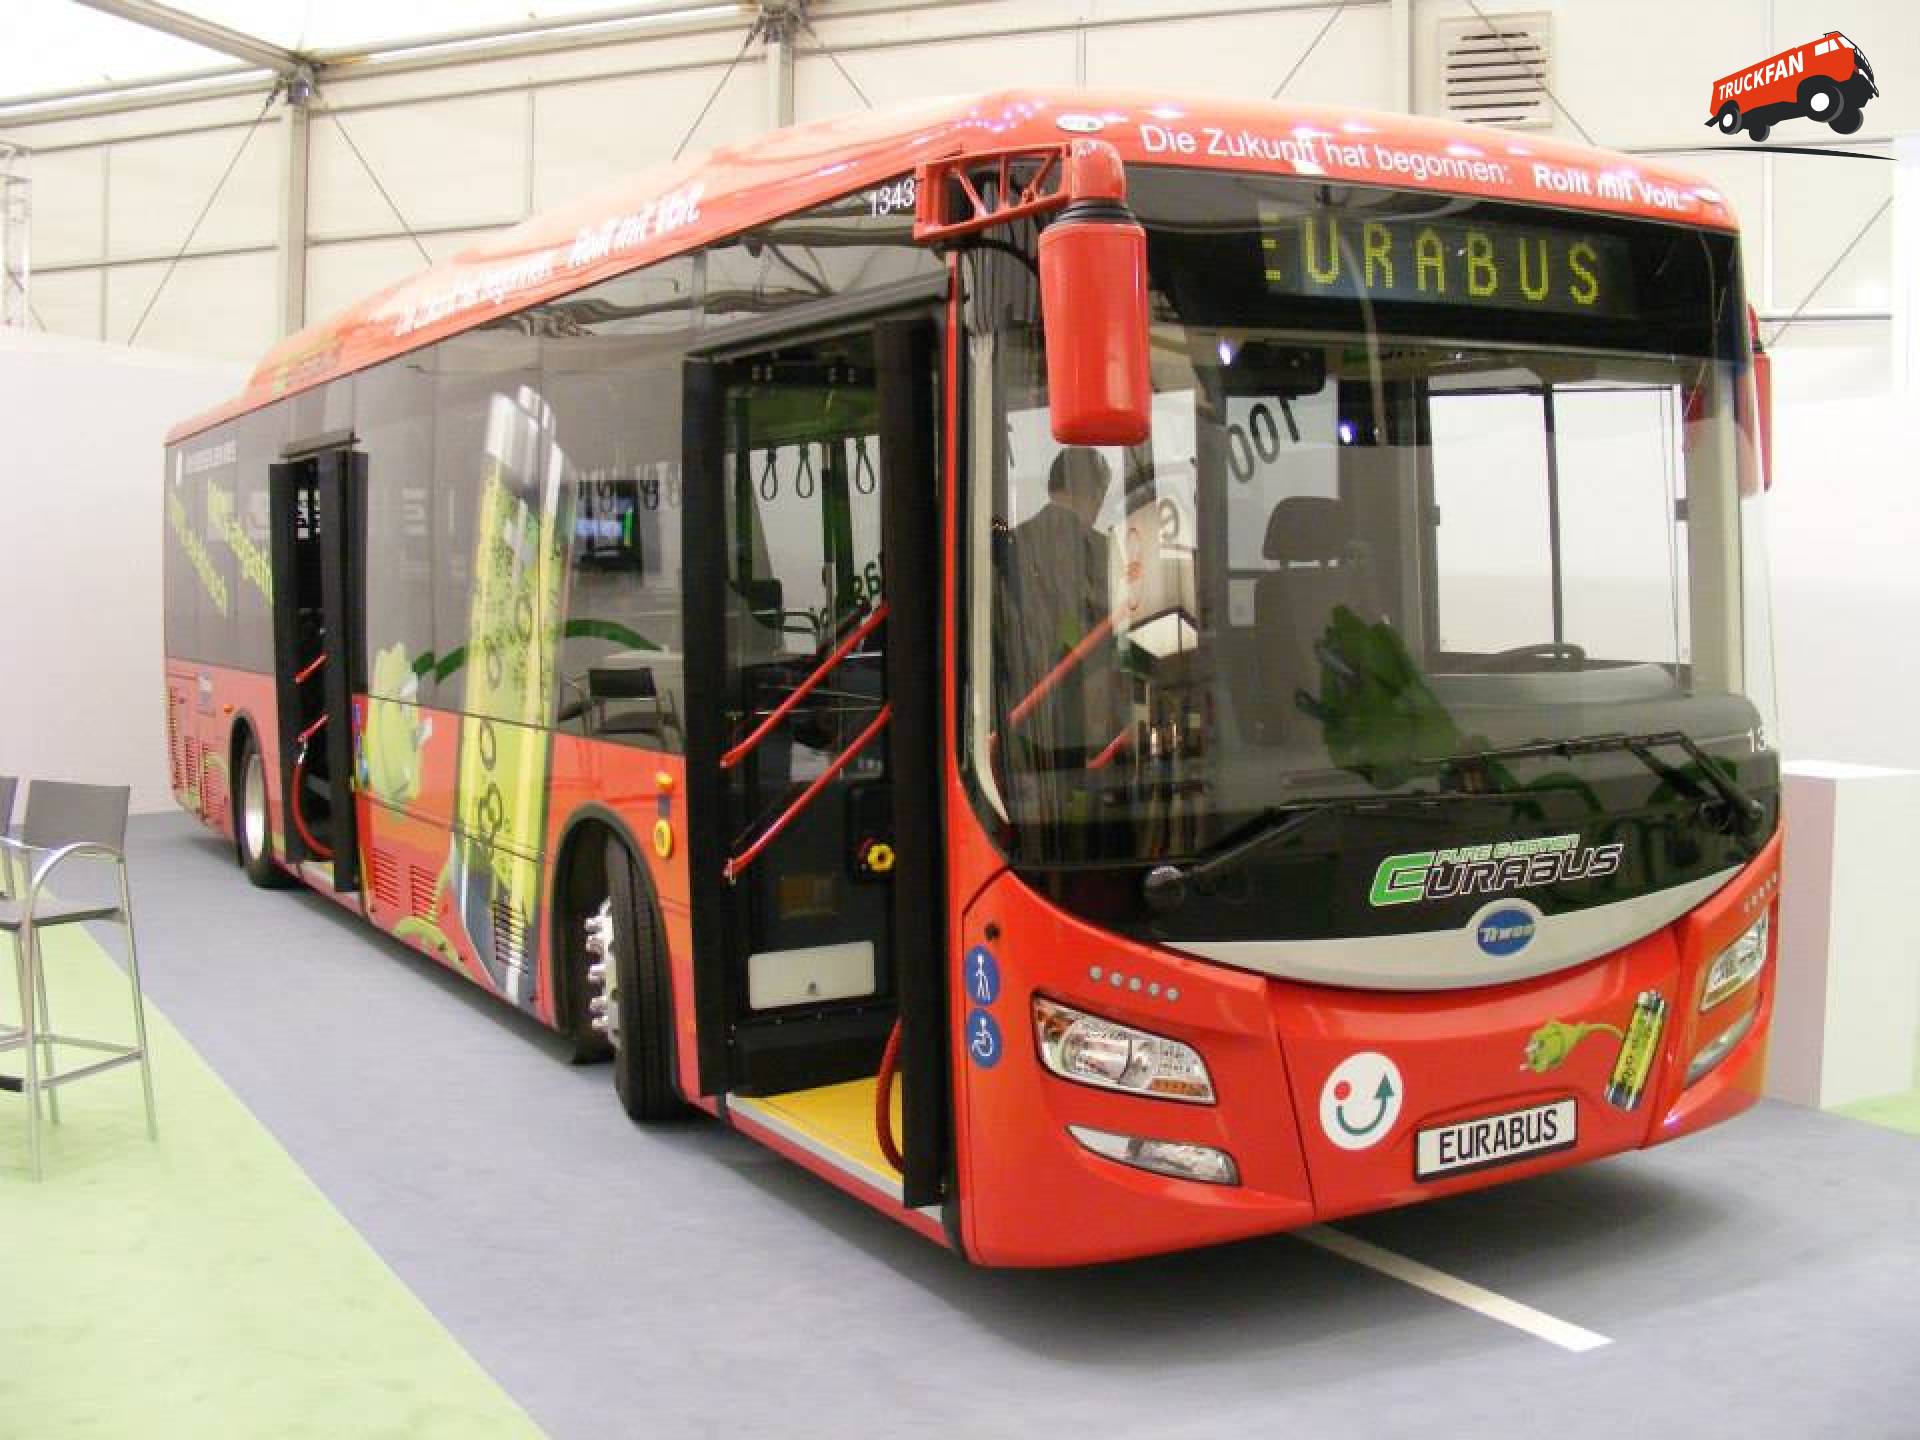 Eurabus bus